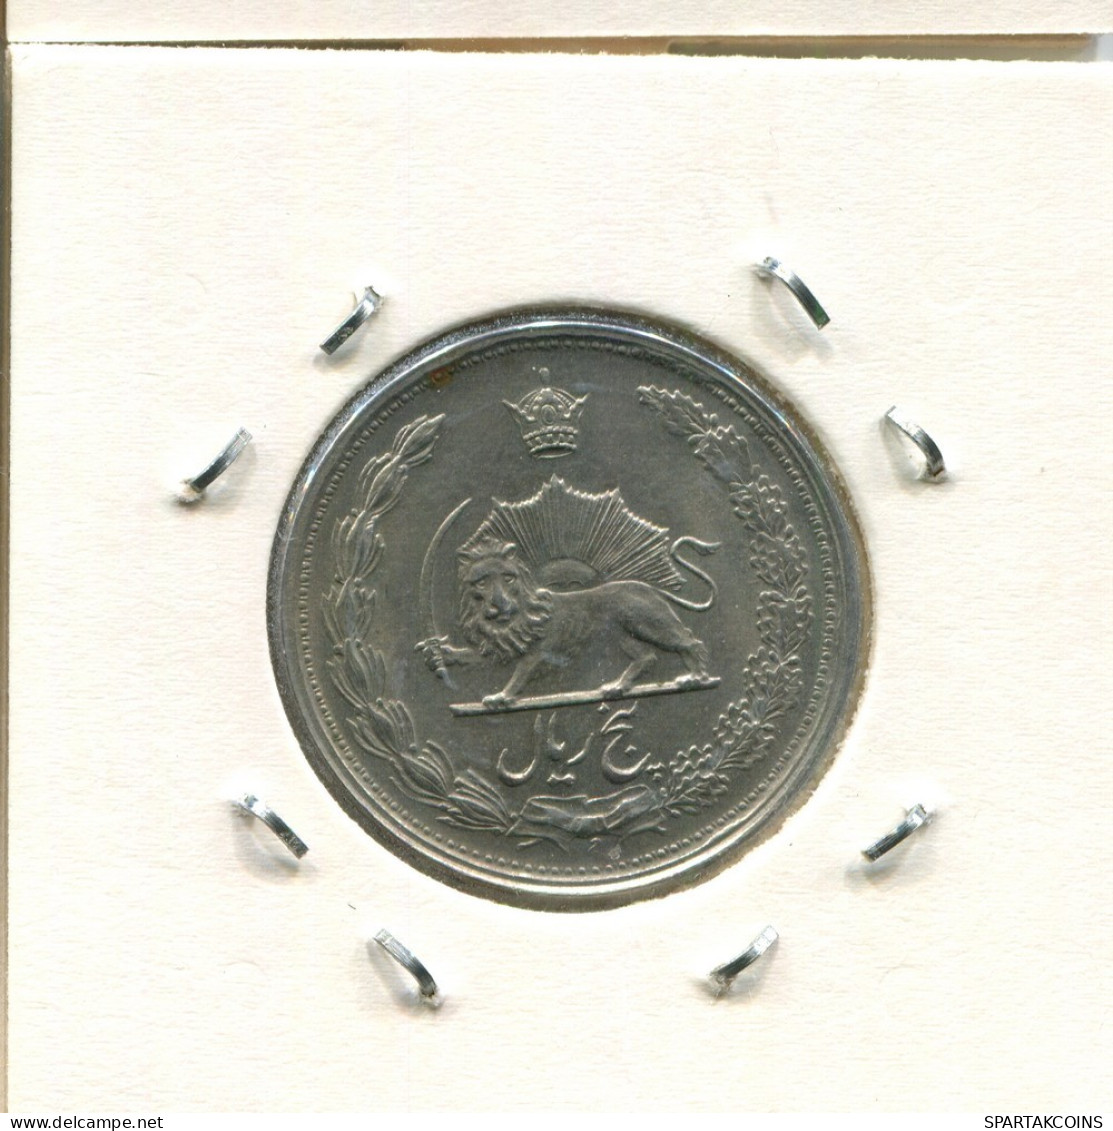 IRAN 5 RIALS 1962 / 1341 ISLAMIC COIN #AS101.U.A - Iran